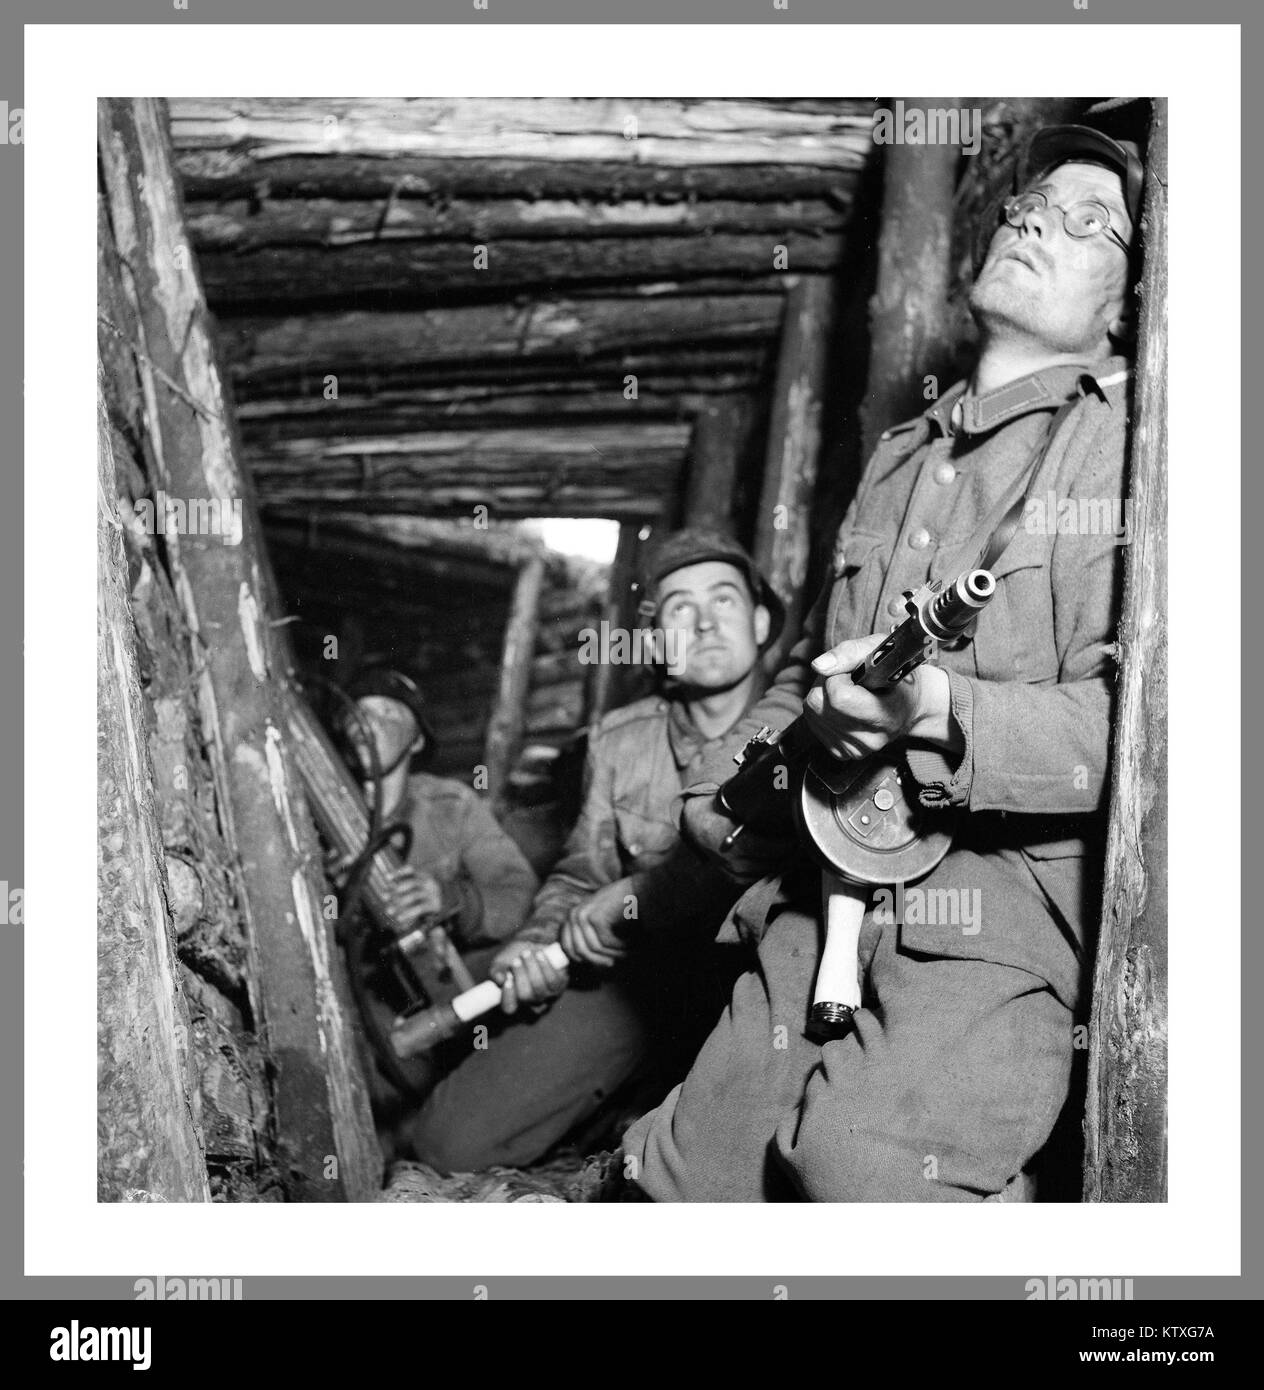 Guerre de continuation du Front de l'Est de la Seconde Guerre mondiale soldats finlandais, VT-line en 1944, l'offensive de Carélie ; 'Alarme dans VT un poste de première ligne' 25 Juin 1941 - 19 septembre 1944 (3 ans, 2 mois, 3 semaines et 4 jours), la Finlande, la Carélie, et Mourmansk victoire soviétique Moscou finlandais de l'Armistice en préservant son indépendance Banque D'Images